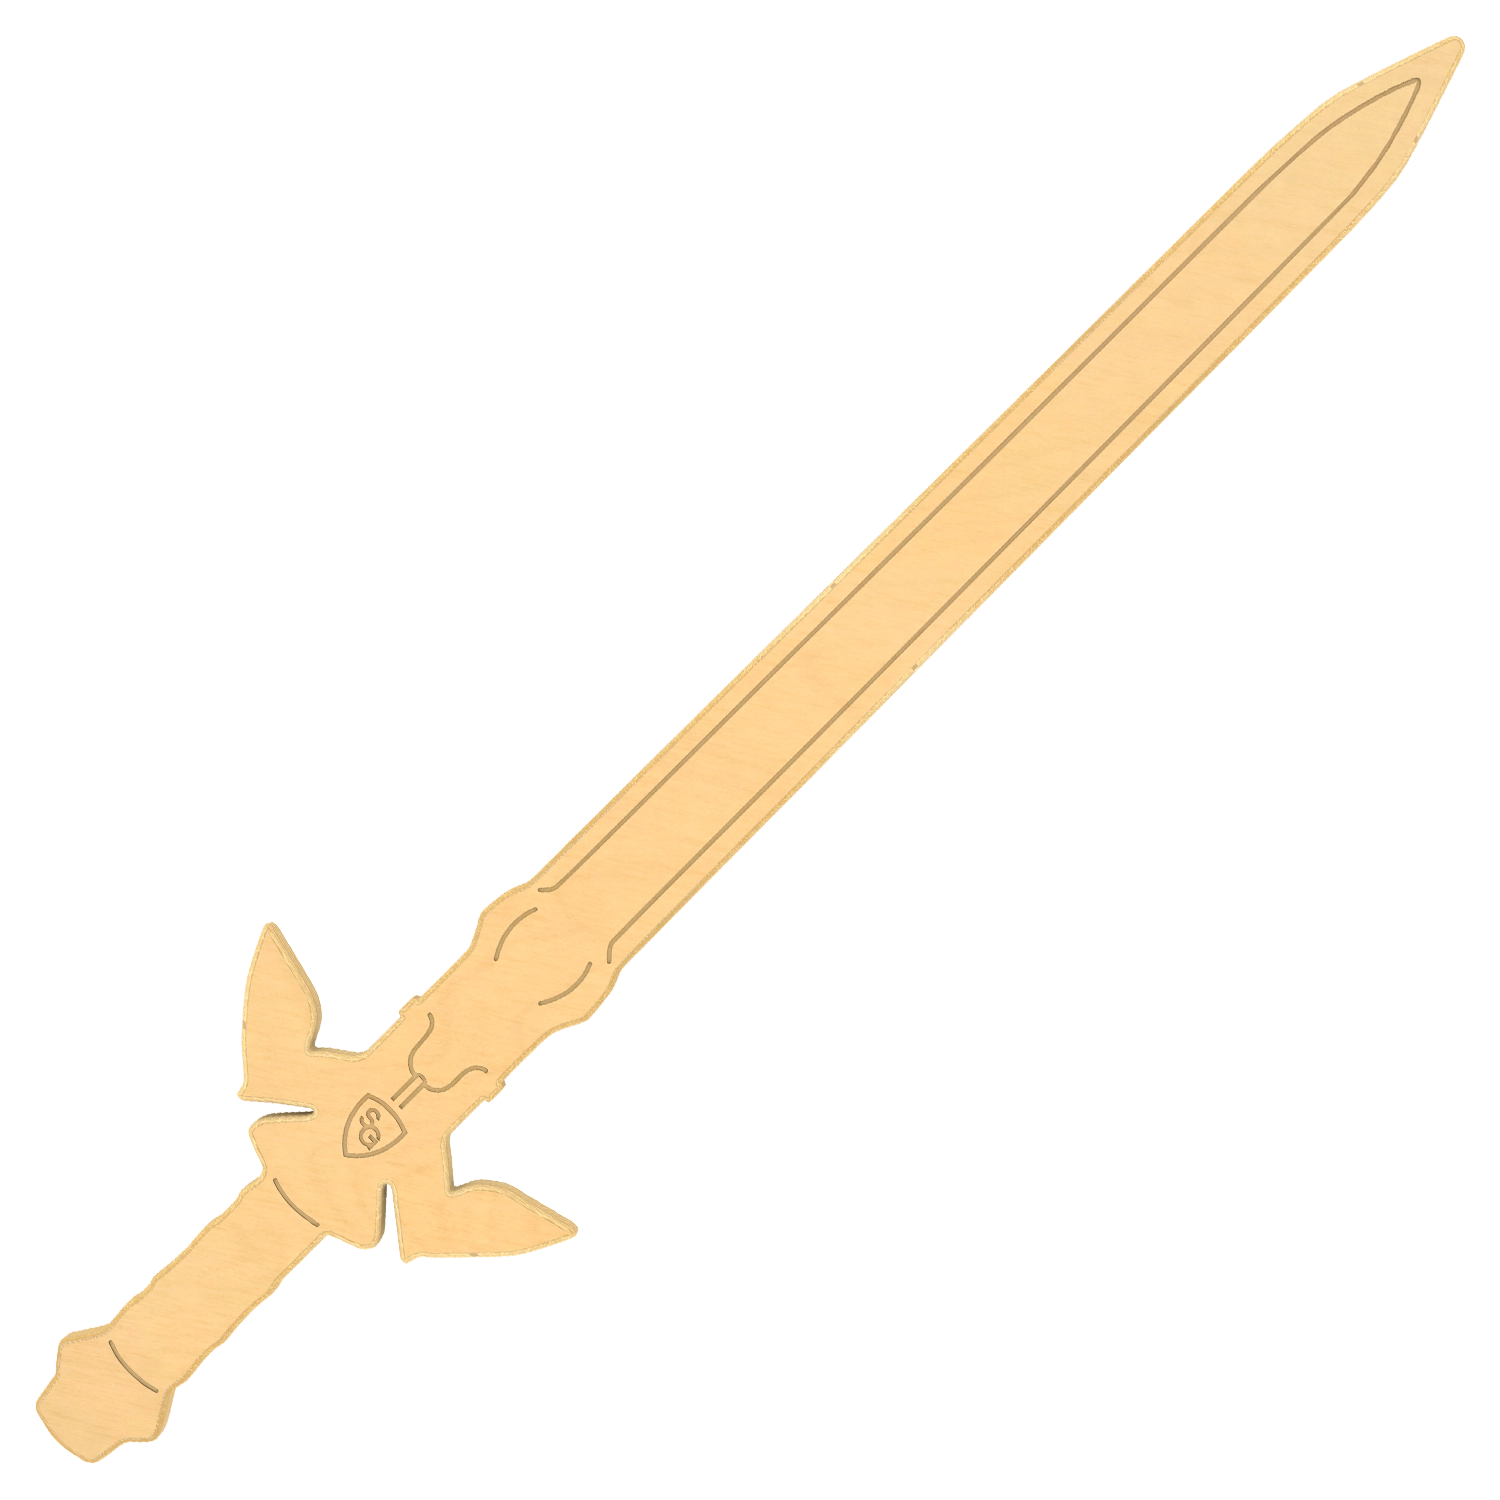 Warrior Sword